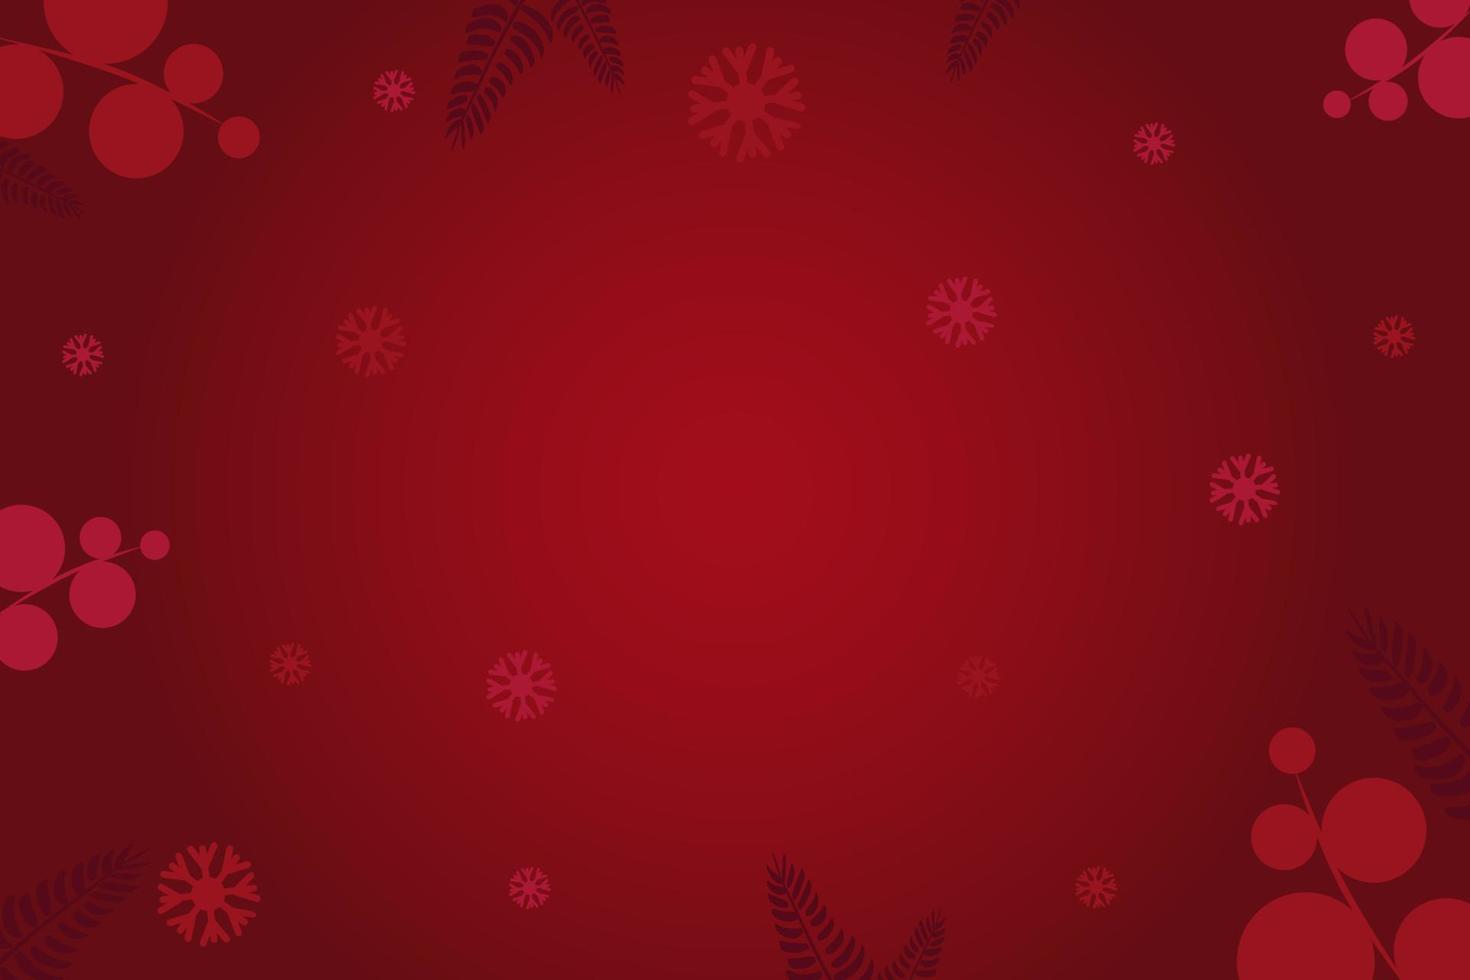 fondos rojo oscuro de año nuevo y navidad 2023 para tarjetas de felicitación o invitaciones con patrones discretos. vector para diseños sin texto. eps10